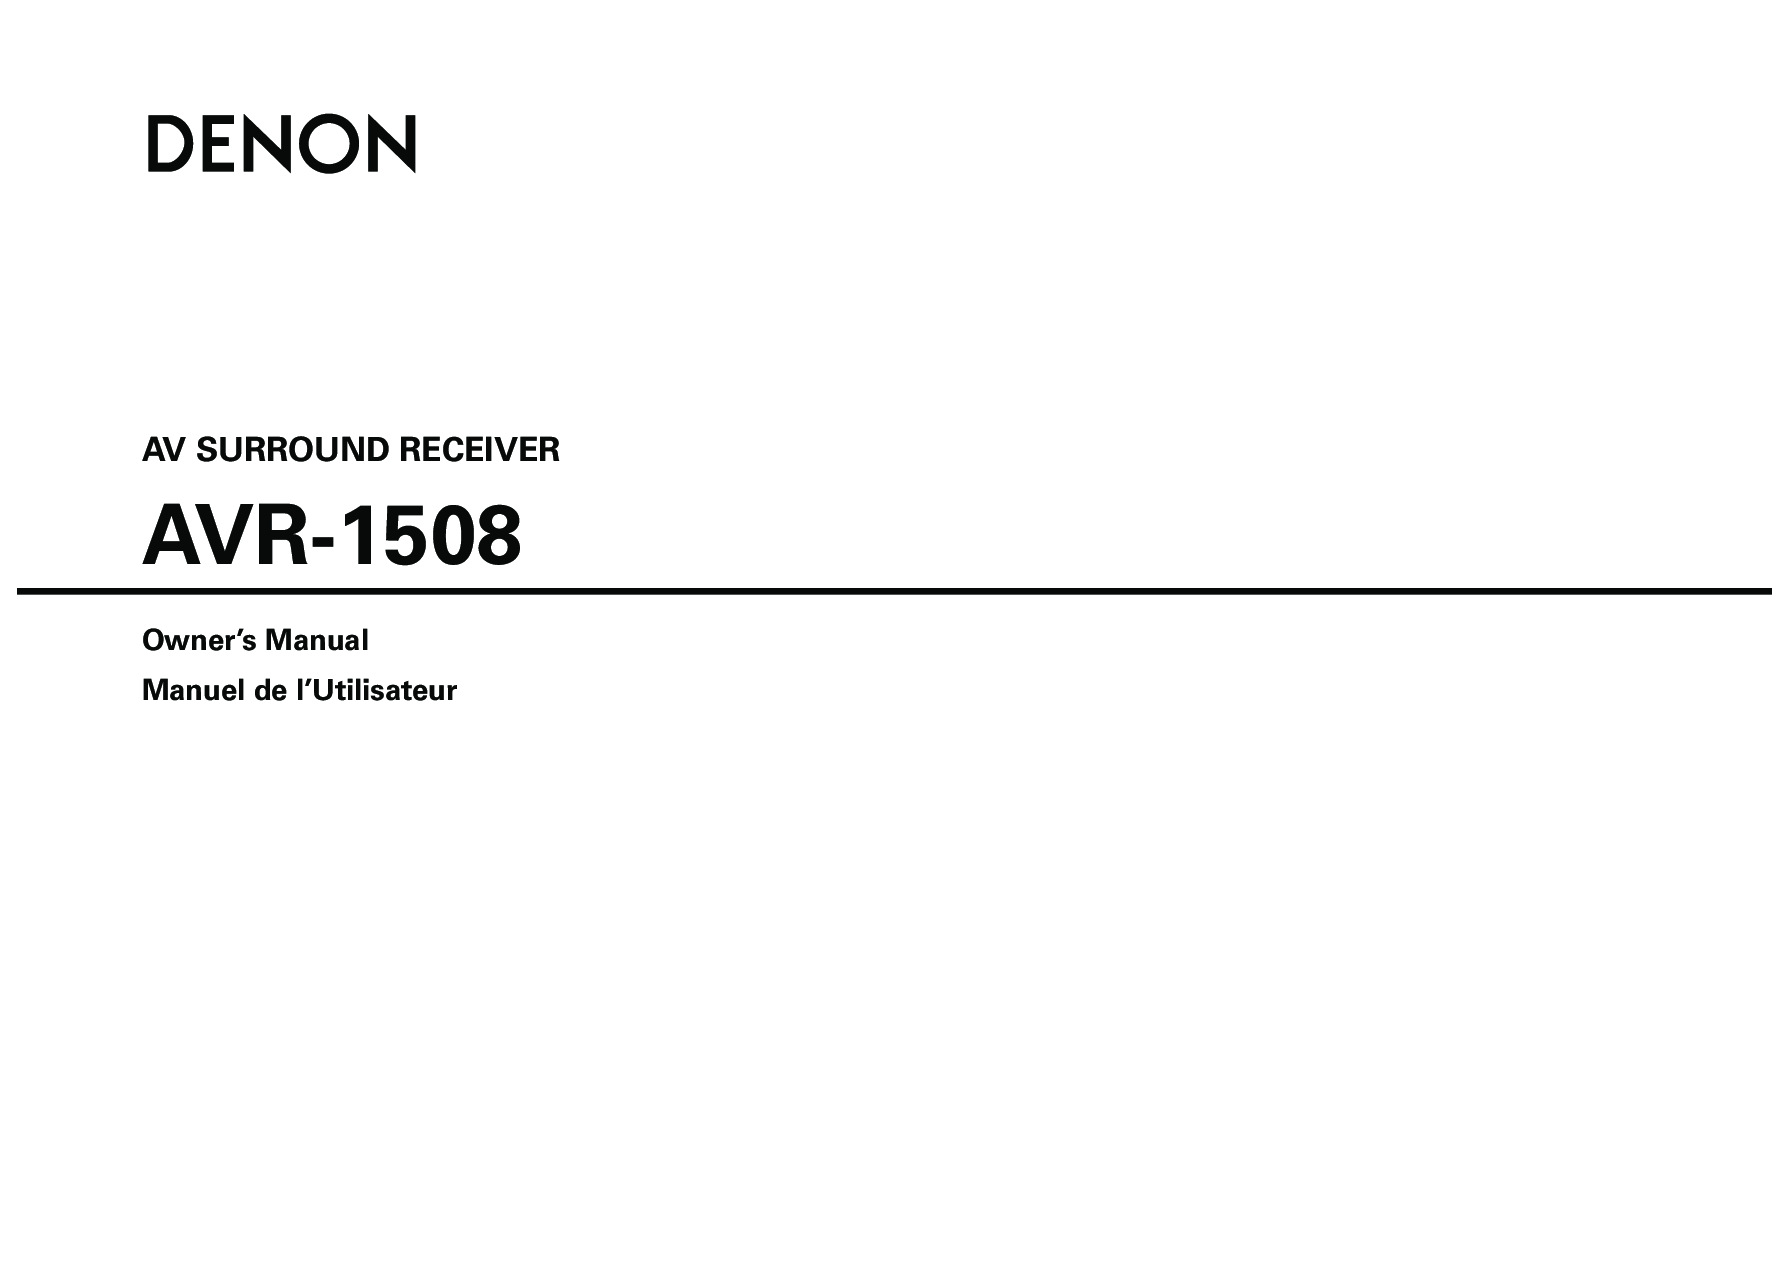 Denon AVR-1508 User Manual